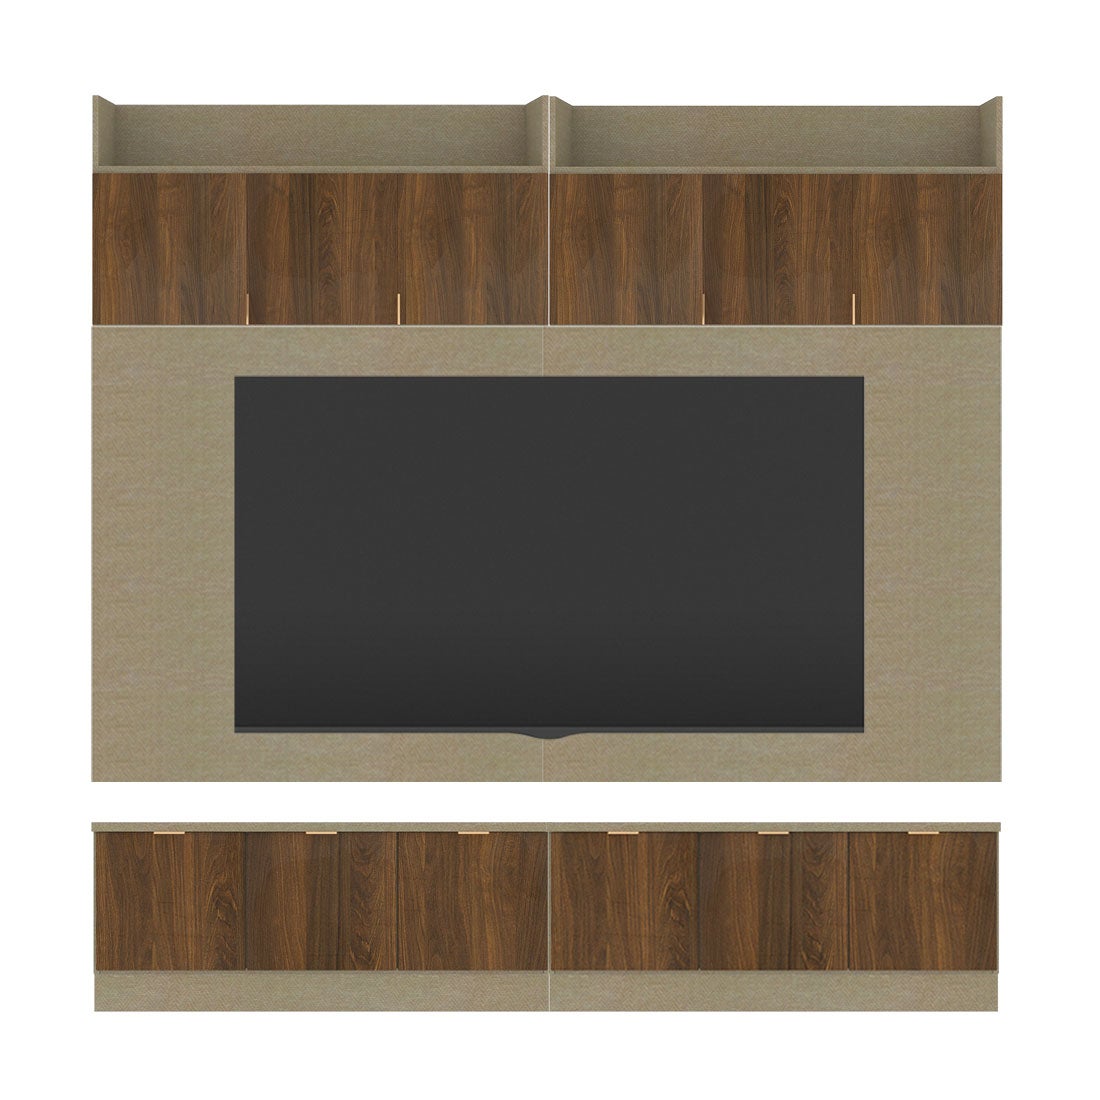 ชุดวางทีวีและตู้โชว์ ขนาด 240 ซม. รุ่น Contini Plus สีไม้เข้ม01